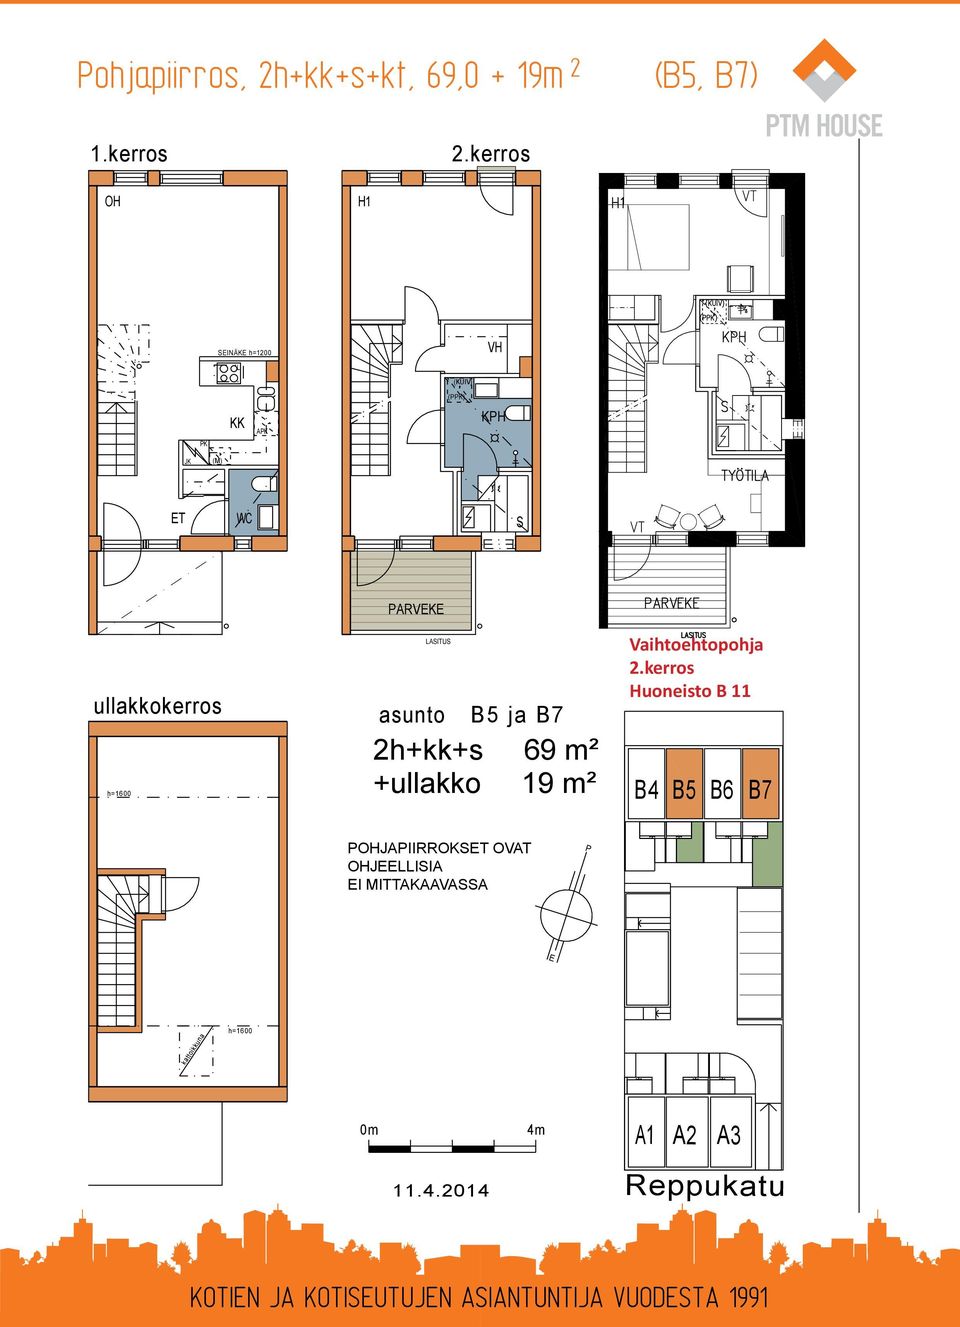 PARVEKE LASITUS asunto B5 ja B7 2h+kk+s 69 m² +ullakko 19 m² Vaihtoehtopohja 2.